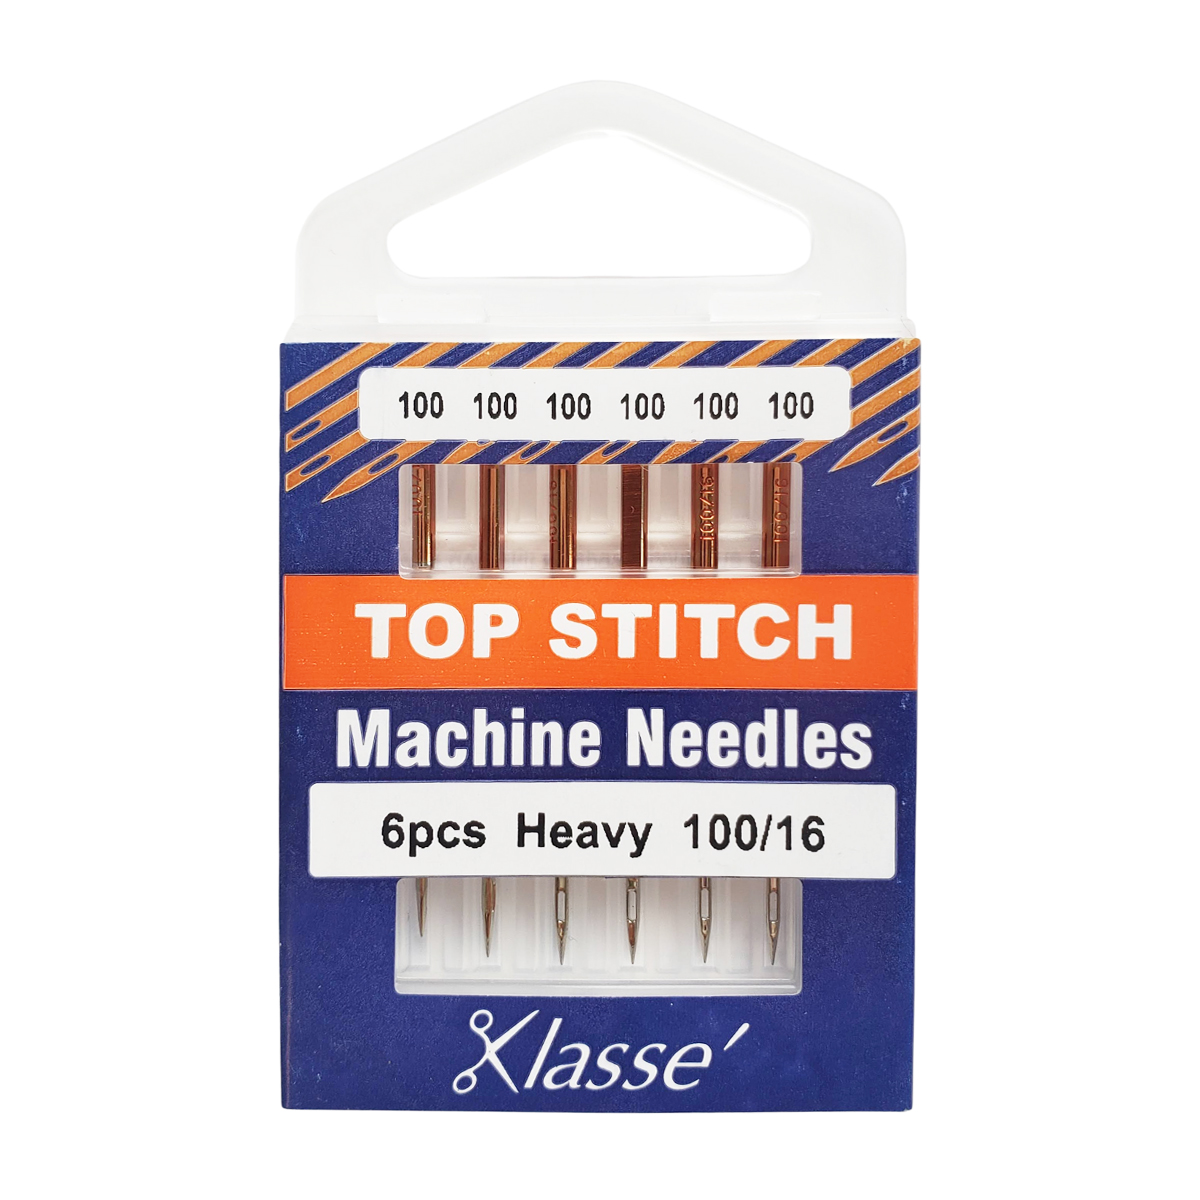 16 Pcs Long Sewing Needles - 2 Size Large Eye Stitching Needles